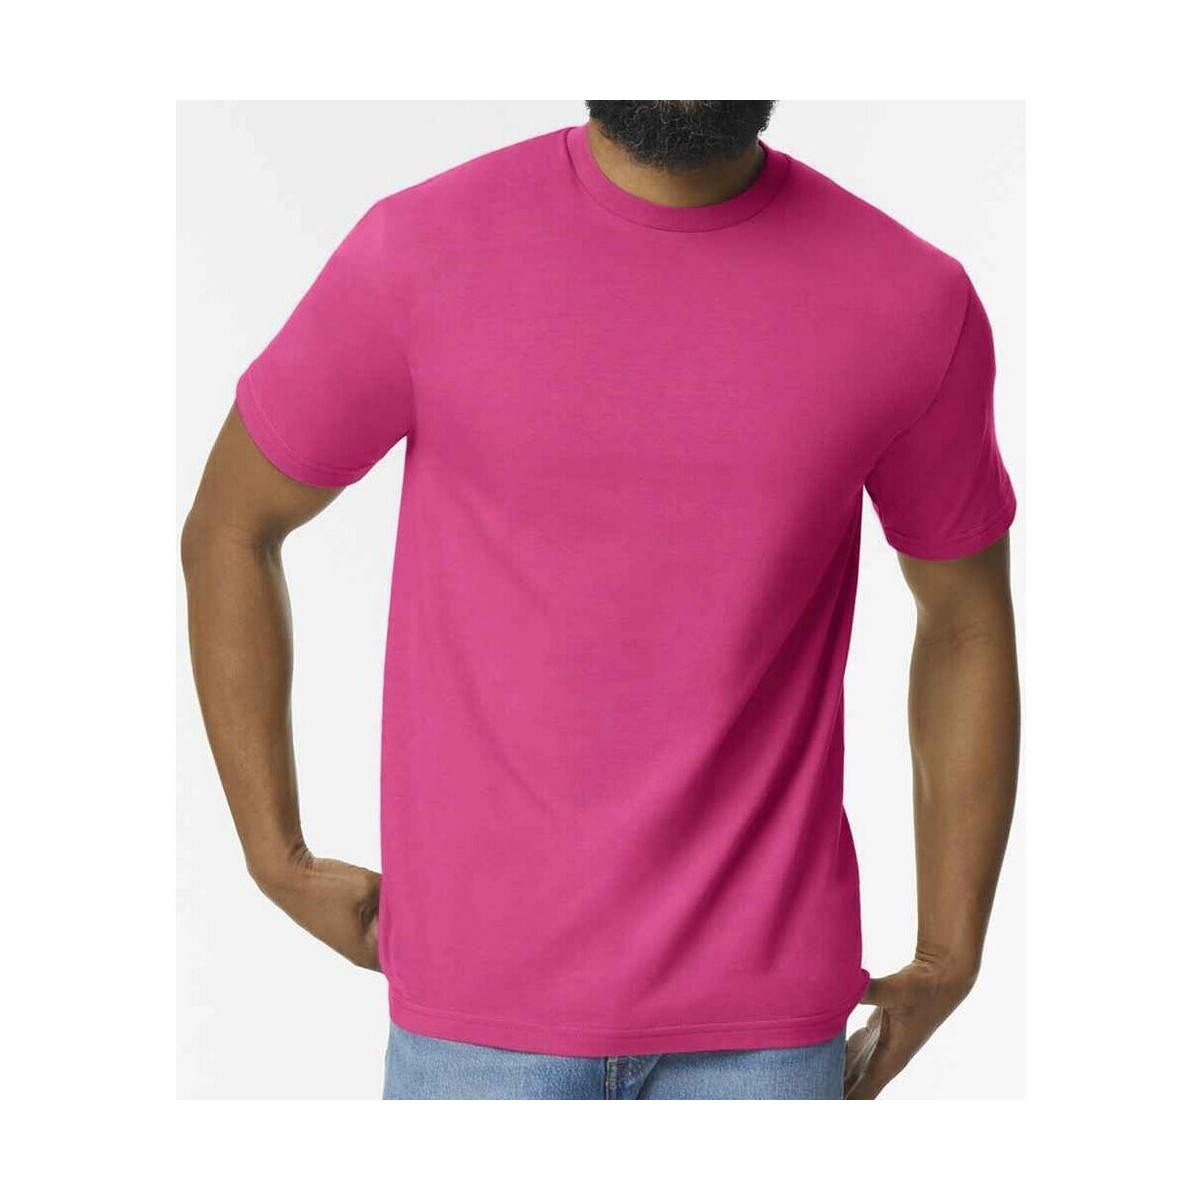 Vêtements Homme T-shirts manches longues Gildan GD15 Rouge